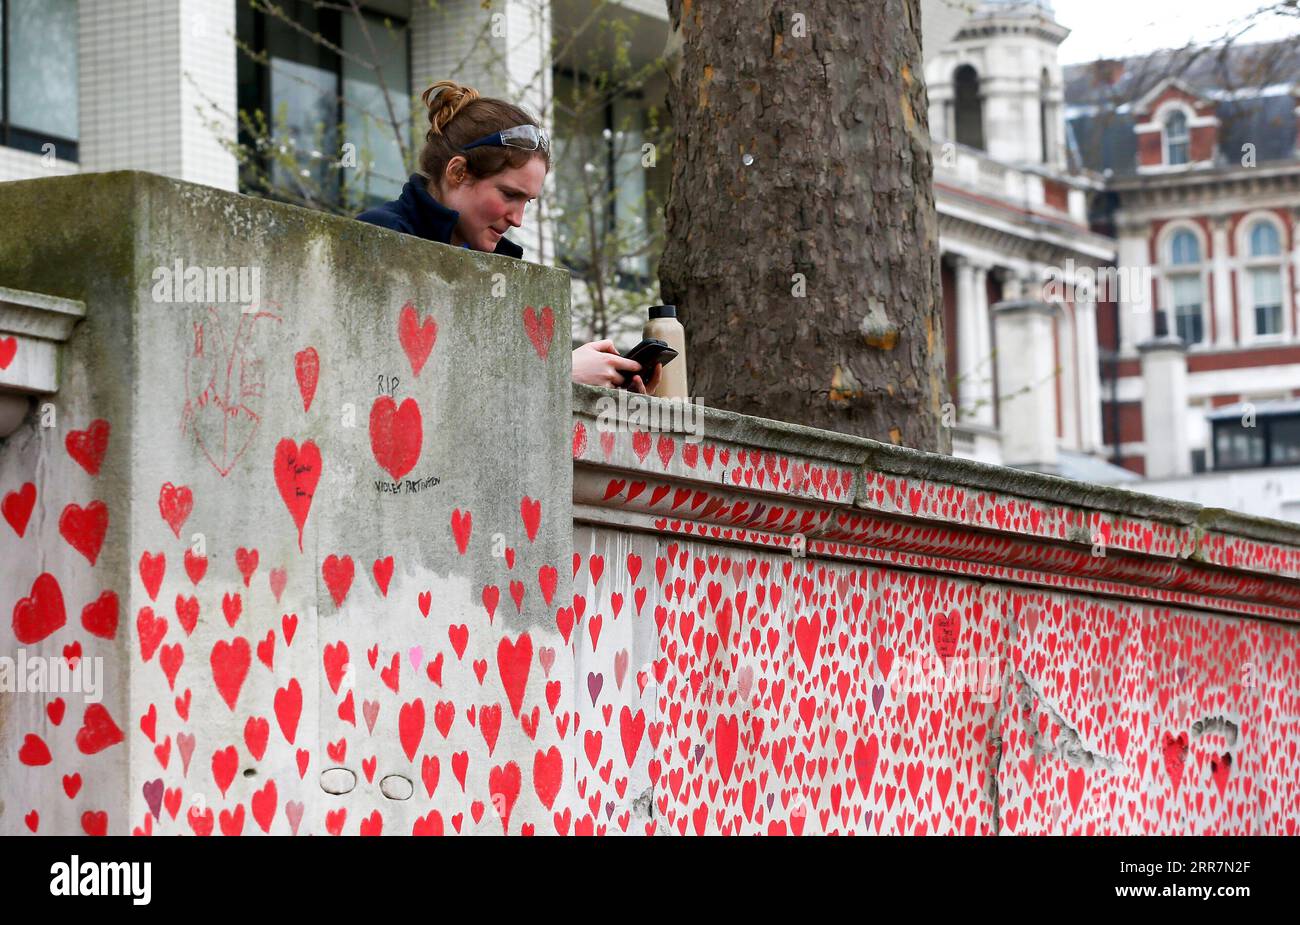 210401 -- LONDRES, 1 de abril de 2021 -- Una mujer es vista al lado del National COVID Memorial Wall en Londres, Gran Bretaña, el 31 de marzo de 2021. Los familiares y voluntarios en duelo están pintando corazones a lo largo de una pared de media milla frente a las Casas del Parlamento en Londres en recuerdo de aquellos que murieron por COVID-19. Otras 4.052 personas en Gran Bretaña dieron positivo por COVID-19, elevando el número total de casos de coronavirus en el país a 4.345.788, según cifras oficiales publicadas el miércoles. MURO CONMEMORATIVO DEL COVID DE GRAN BRETAÑA-LONDRES HANXYAN PUBLICATIONXNOTXINXCHN Foto de stock